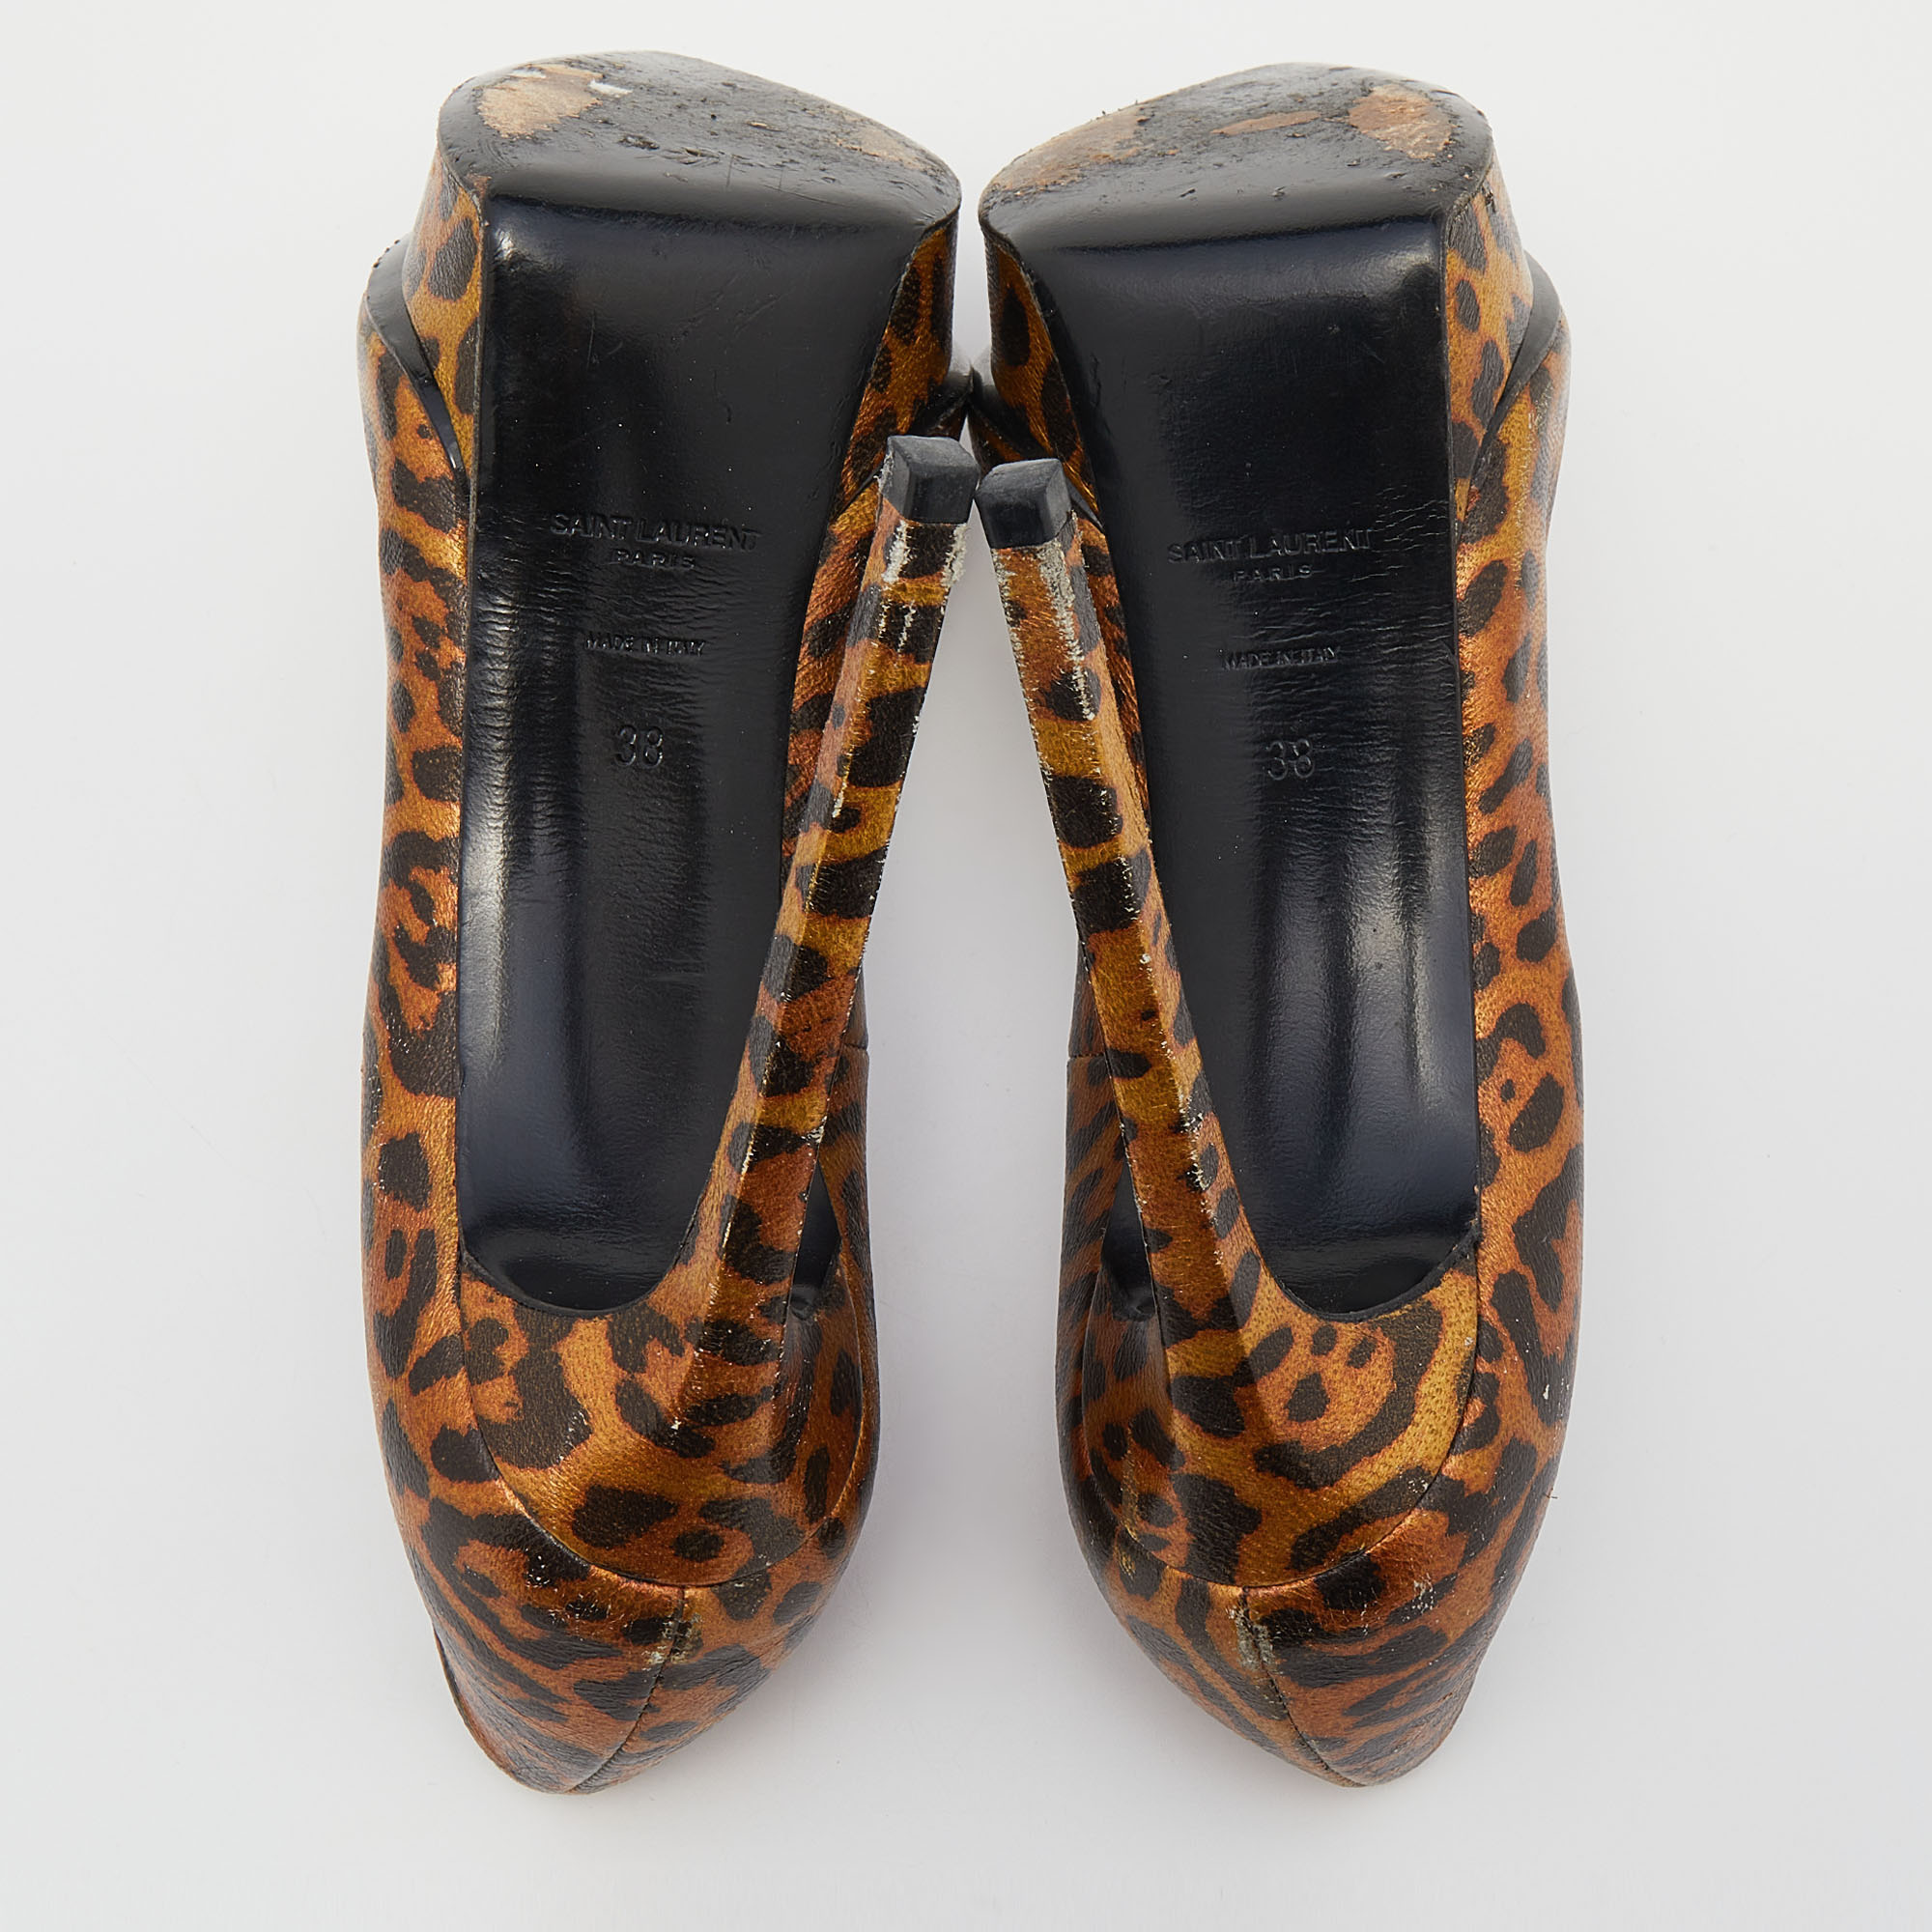 Saint Laurent Metallic Leopard Print Leather Janis Pointed Toe Platform Pumps Size 38